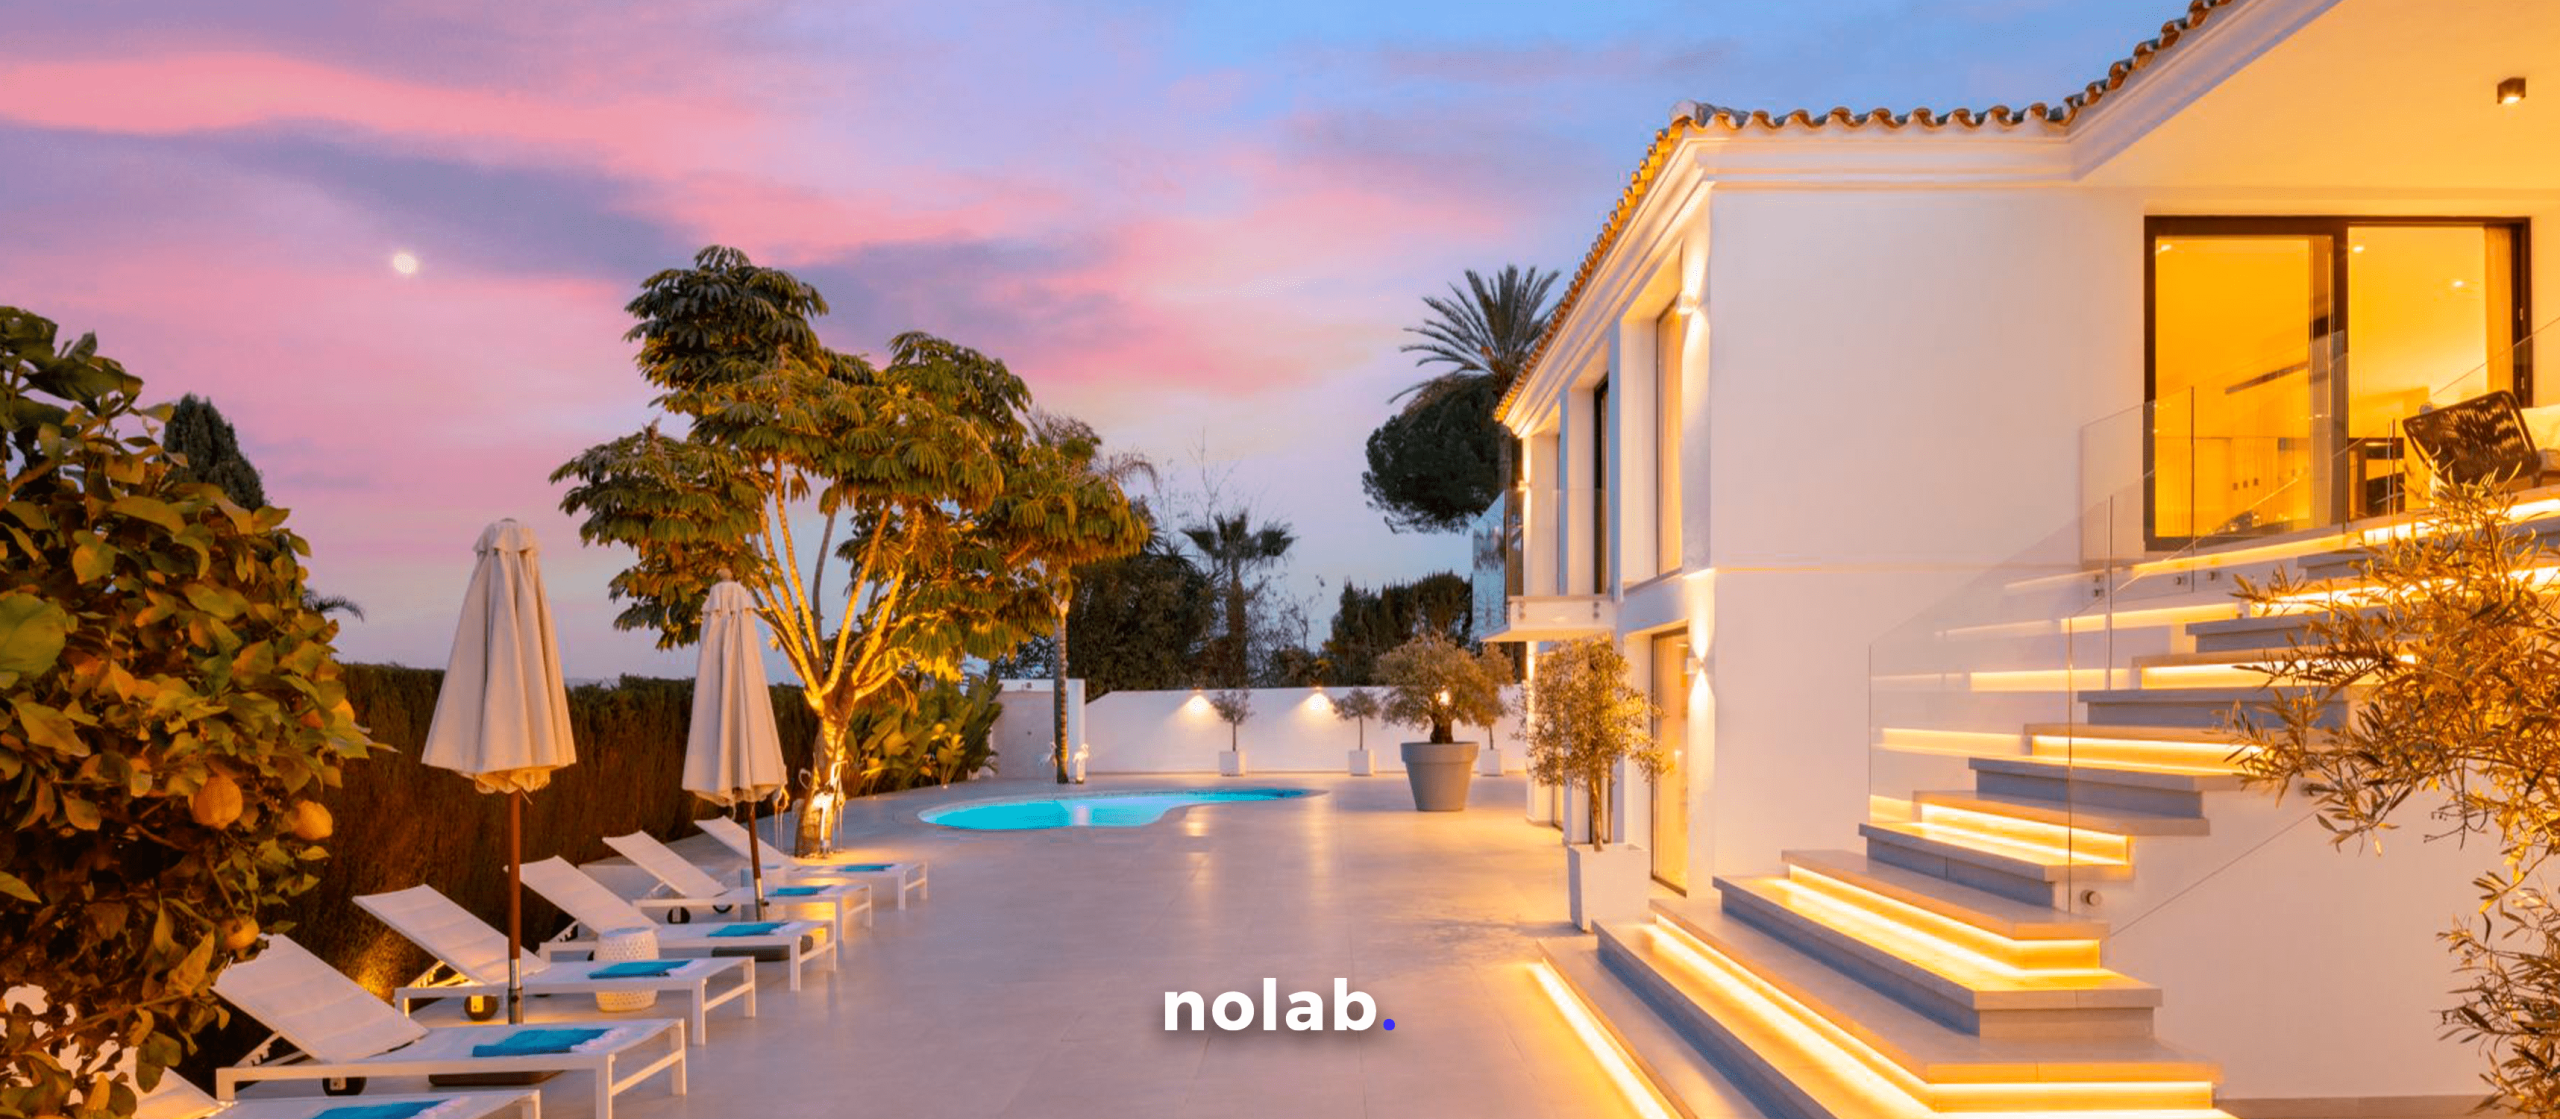 Nearshoring en México: Una oportunidad de inversión para extranjeros en el mercado inmobiliario. Nolab.